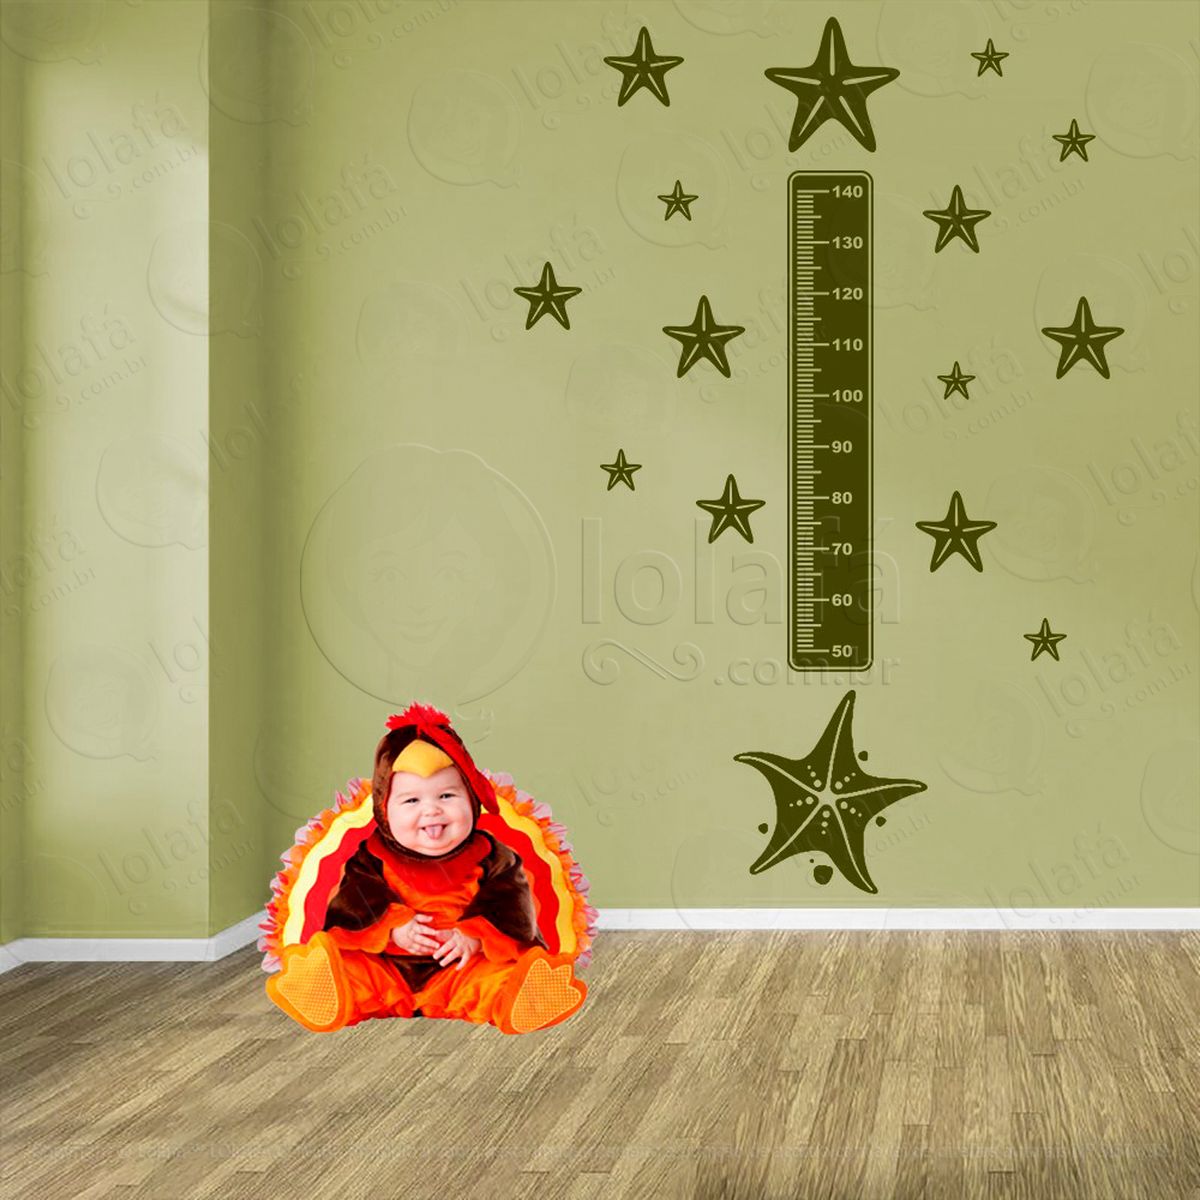 estrela-do-mar e estrelas-do-mar adesivo régua de crescimento infantil, medidor de altura para quarto, porta e parede - mod:83